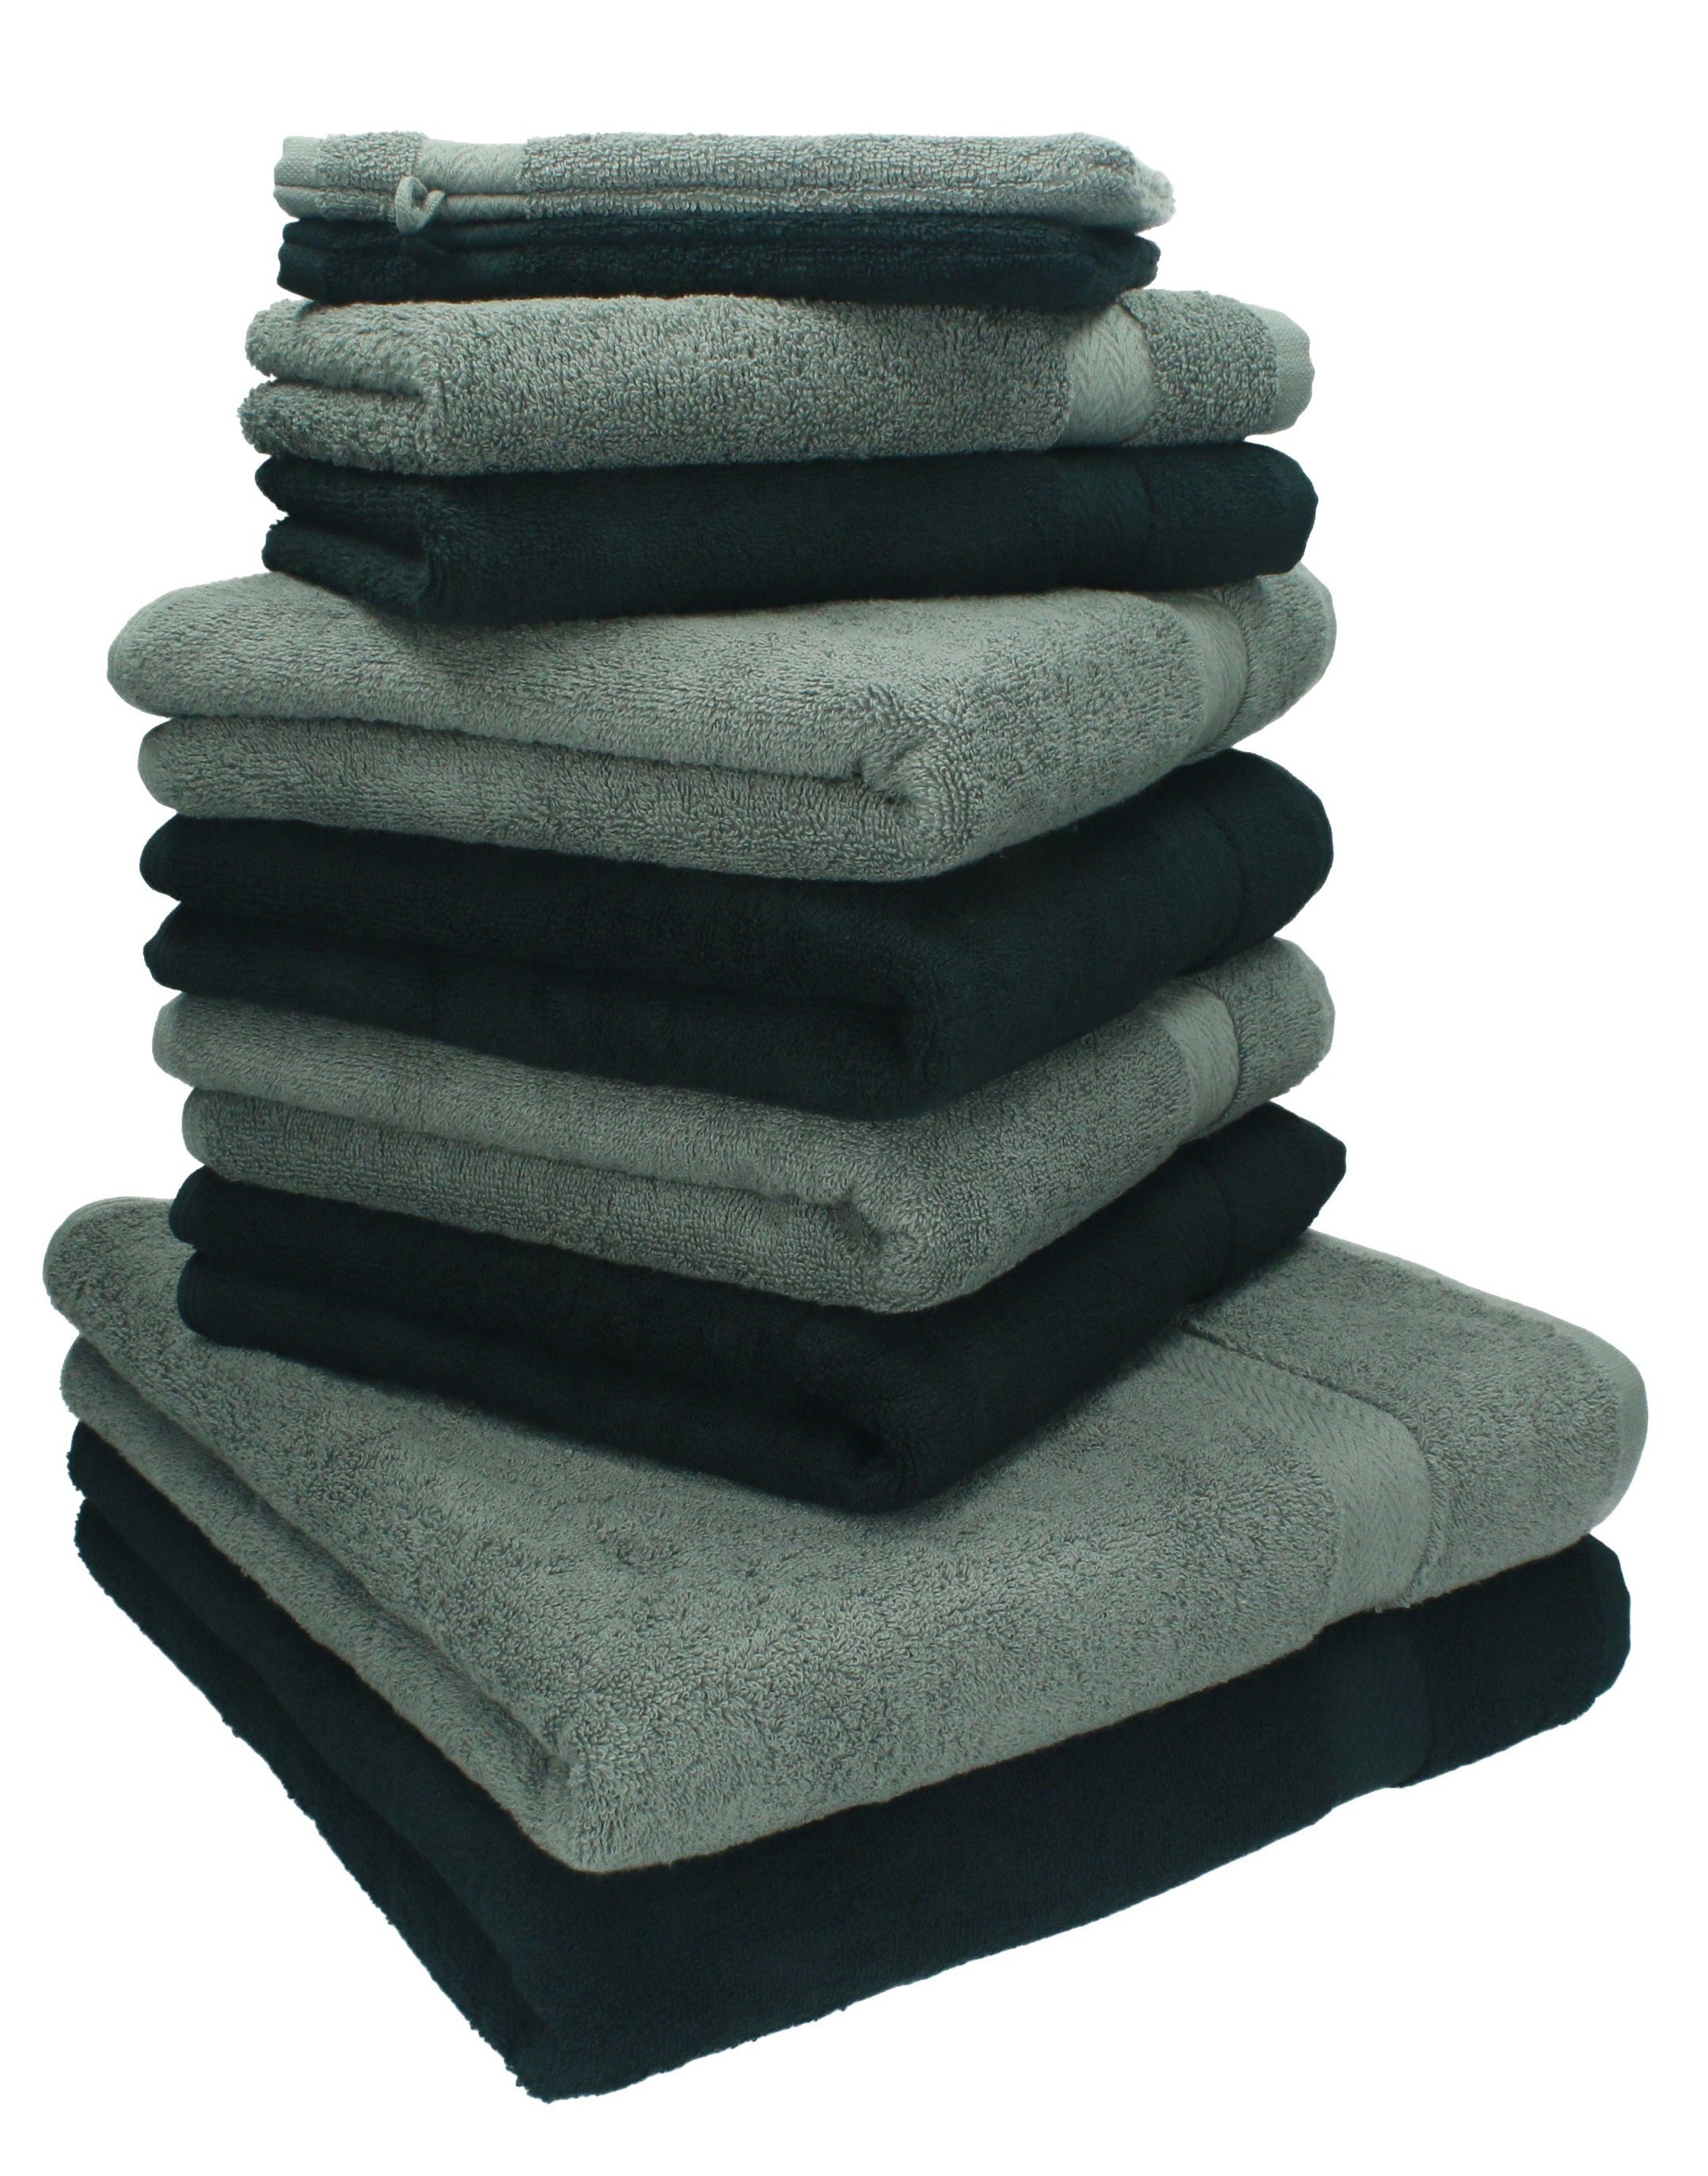 Betz Handtuch Set 10-TLG. Handtuch-Set Premium Farbe Anthrazit & Schwarz, 100% Baumwolle, (10-tlg)